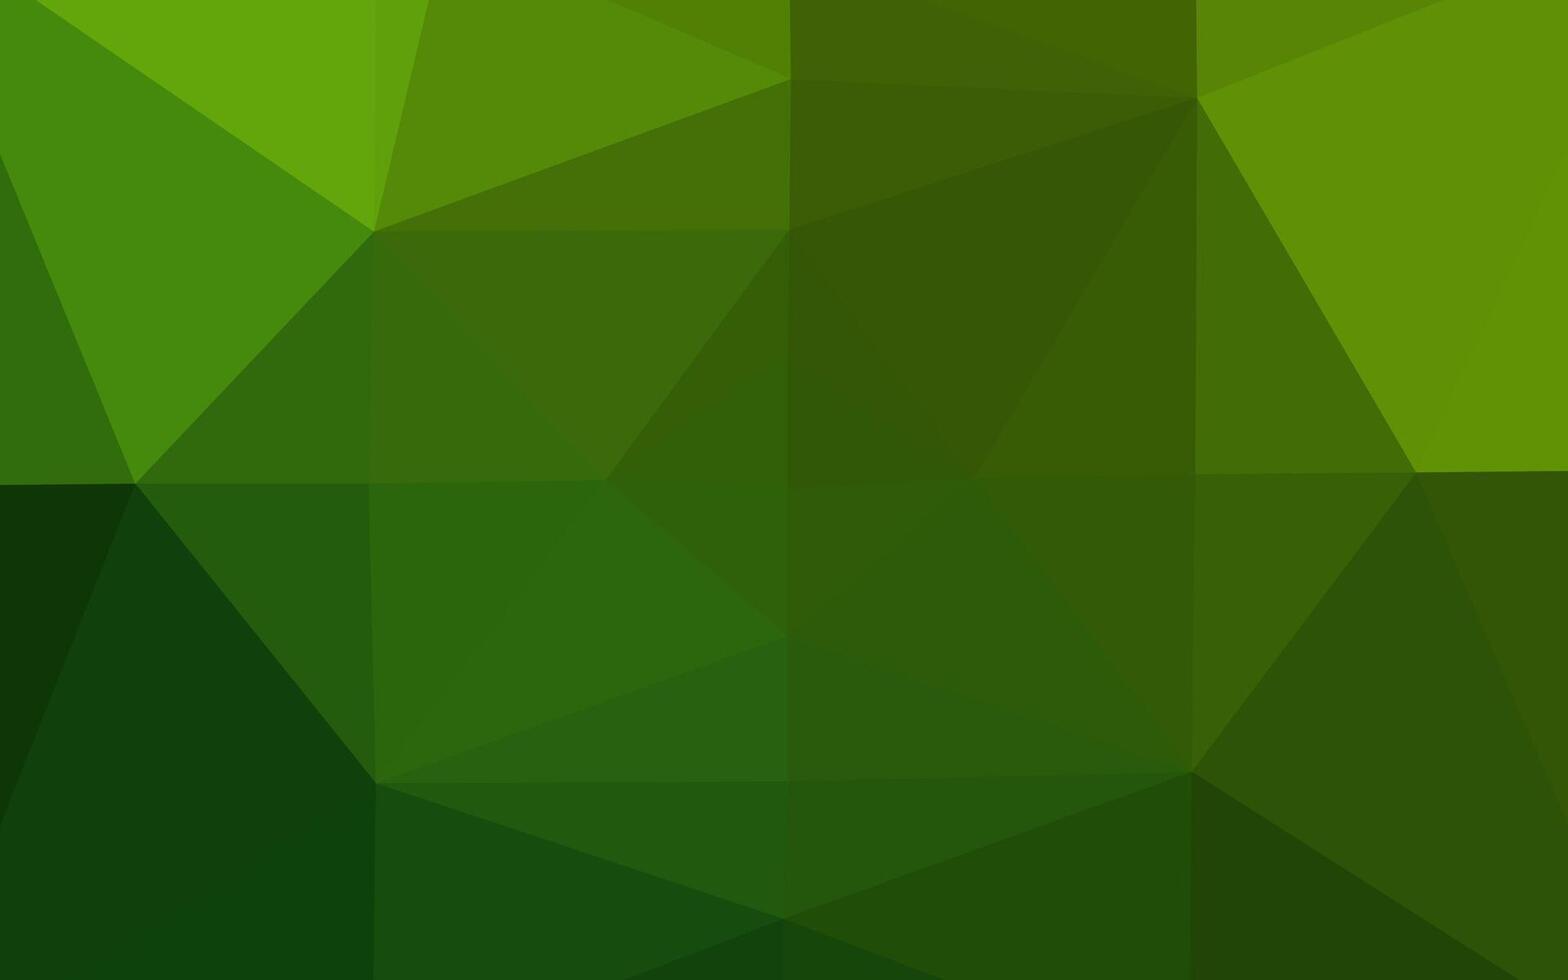 couverture polygonale abstraite de vecteur vert clair.